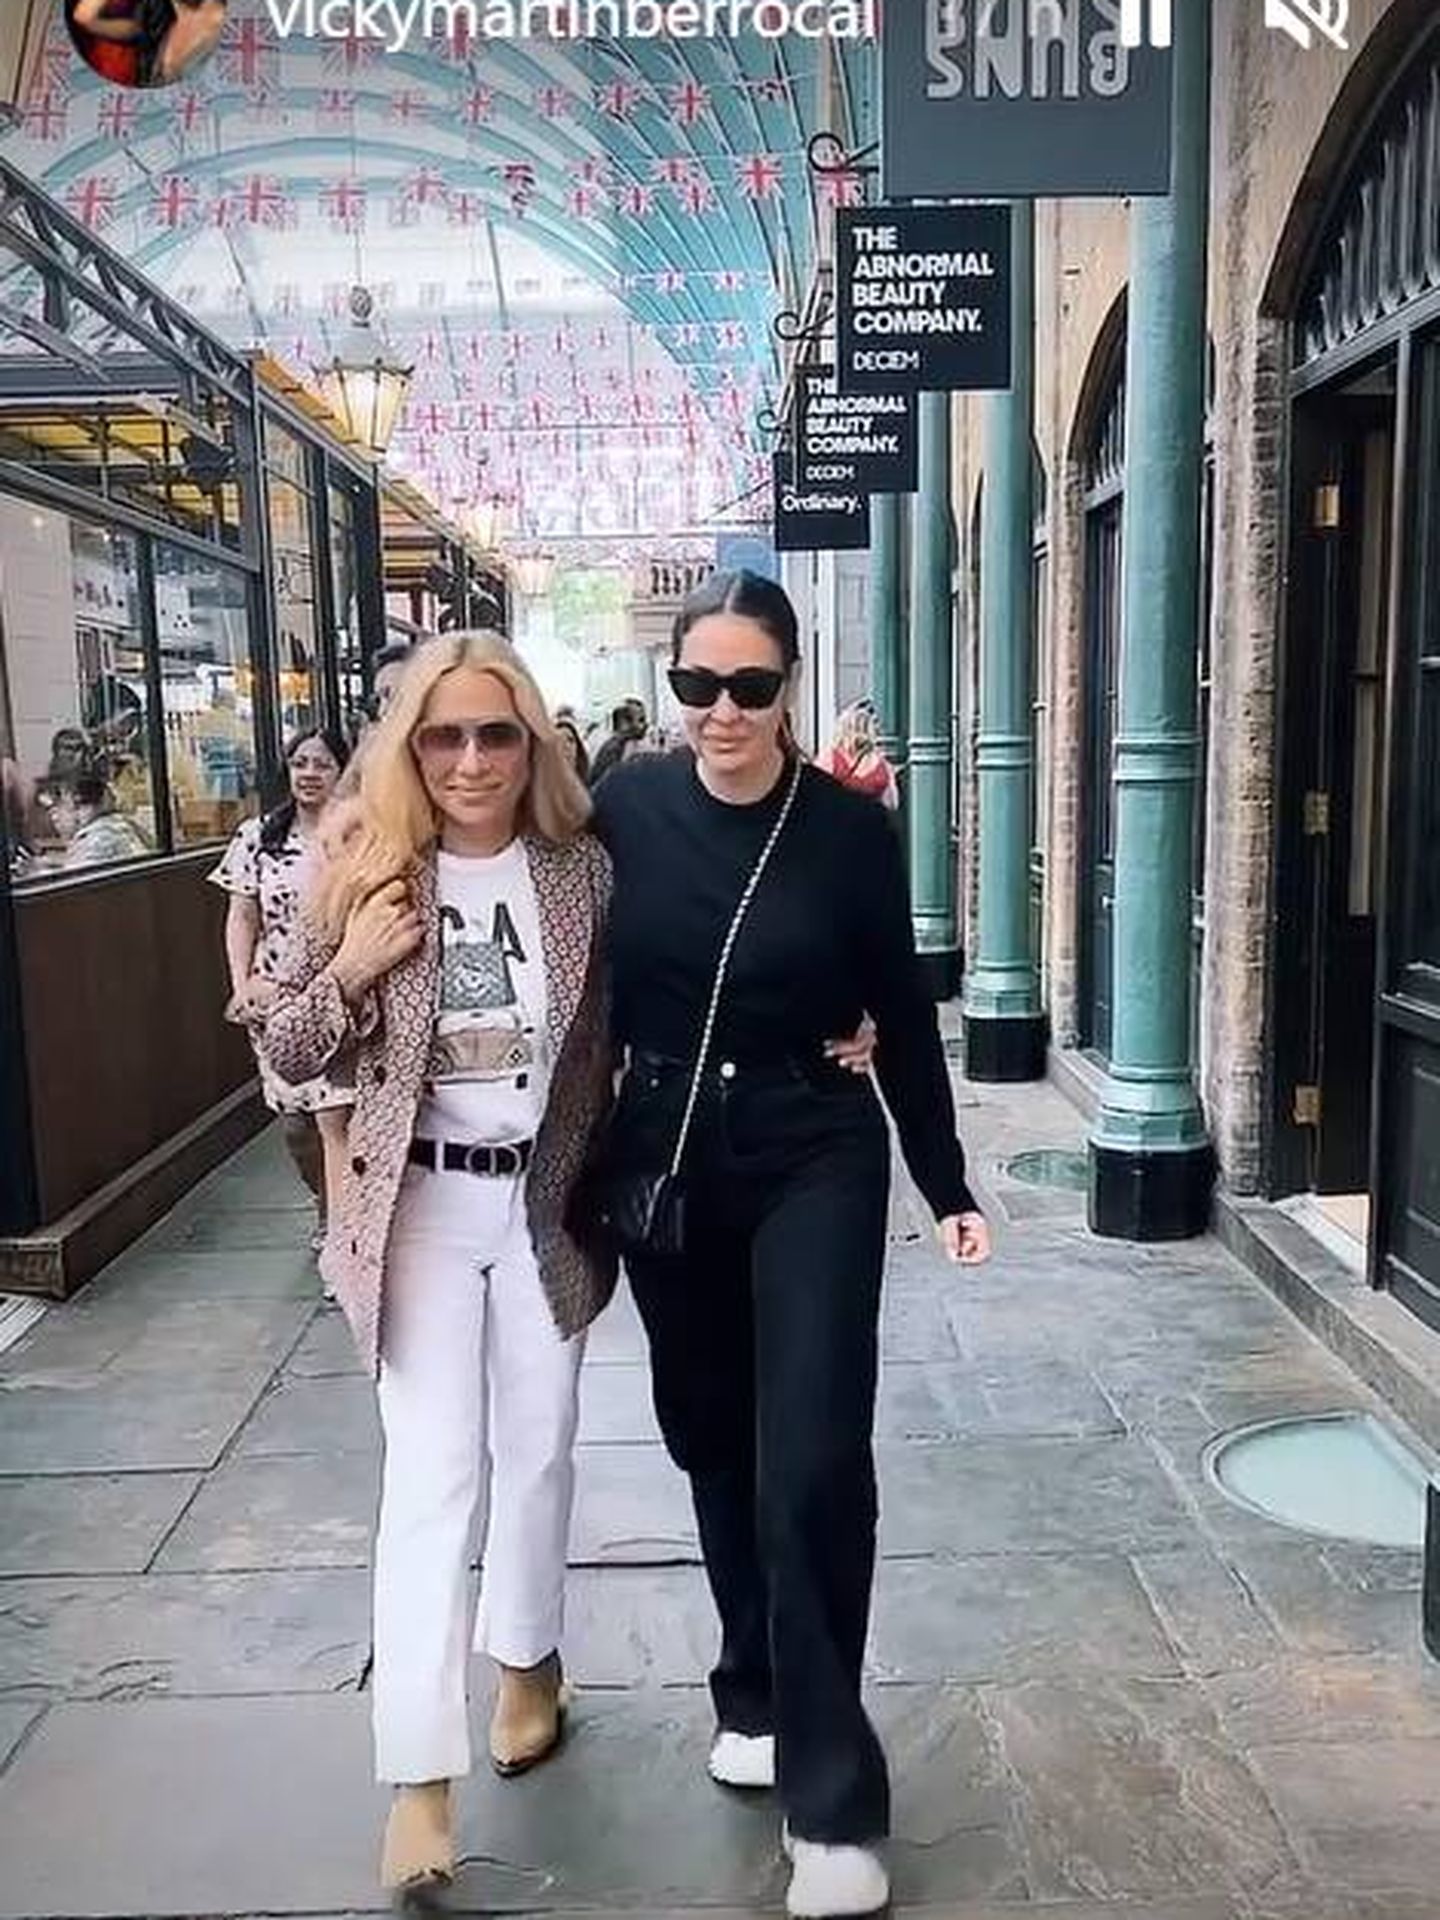 Marta Sánchez y Vicky Martín Berrocal, paseando por Londres. (IG)